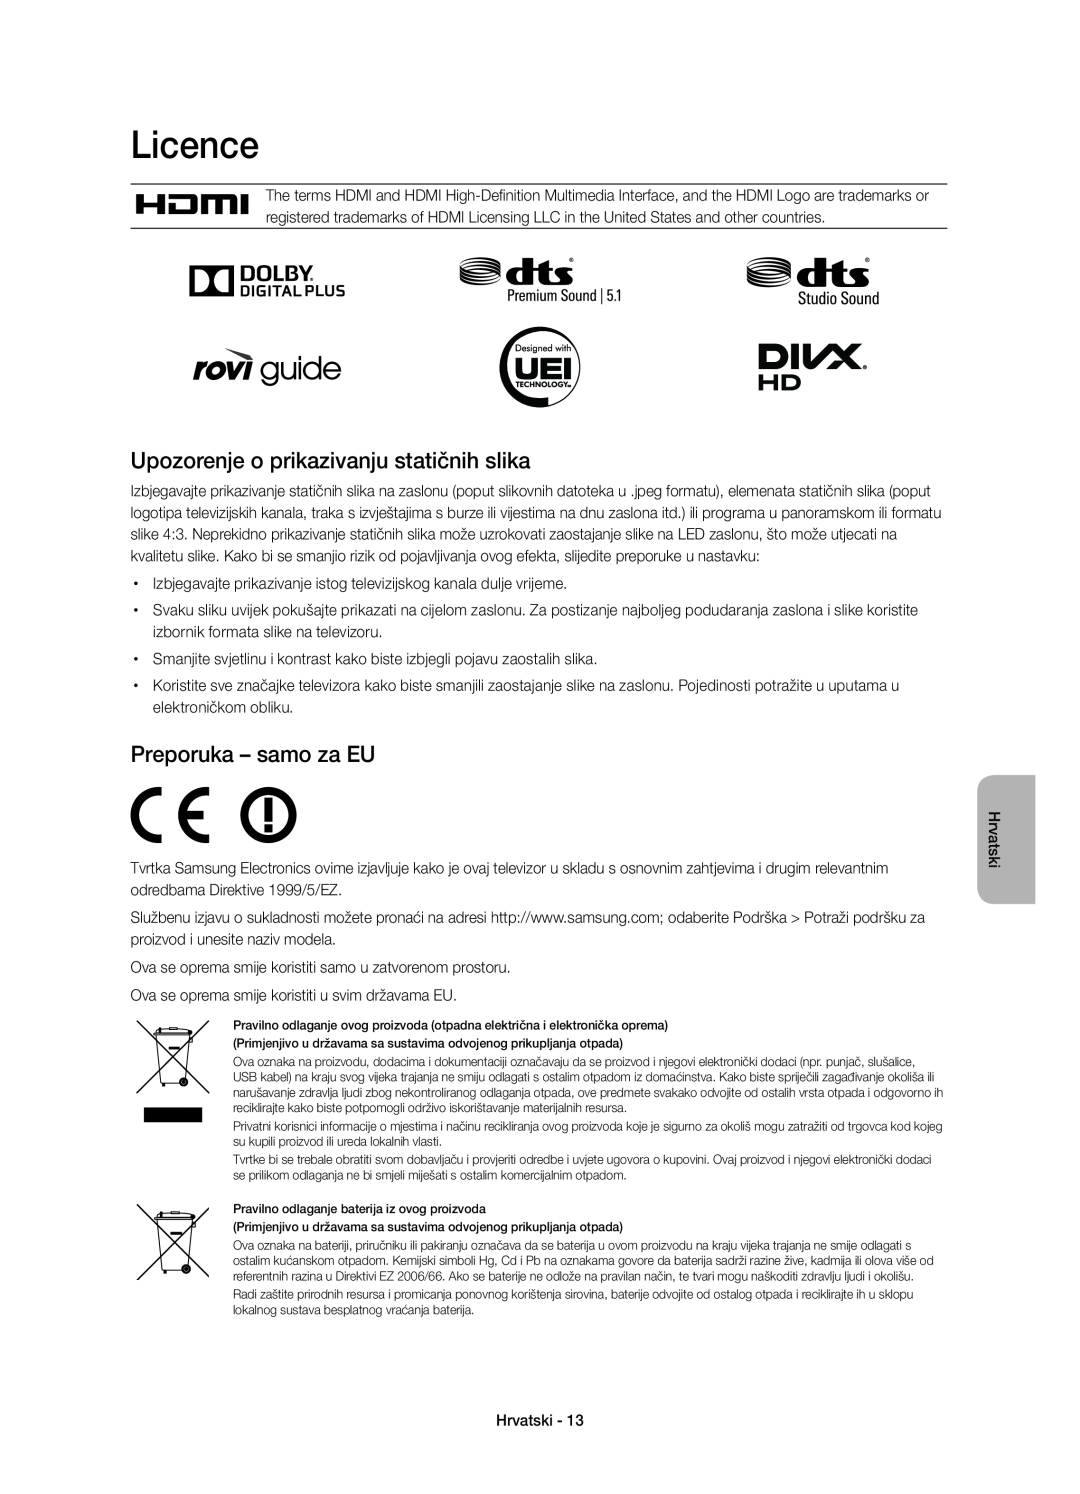 Samsung UE32H6410SUXXH manual Licence, Upozorenje o prikazivanju statičnih slika, Preporuka - samo za EU, Hrvatski 